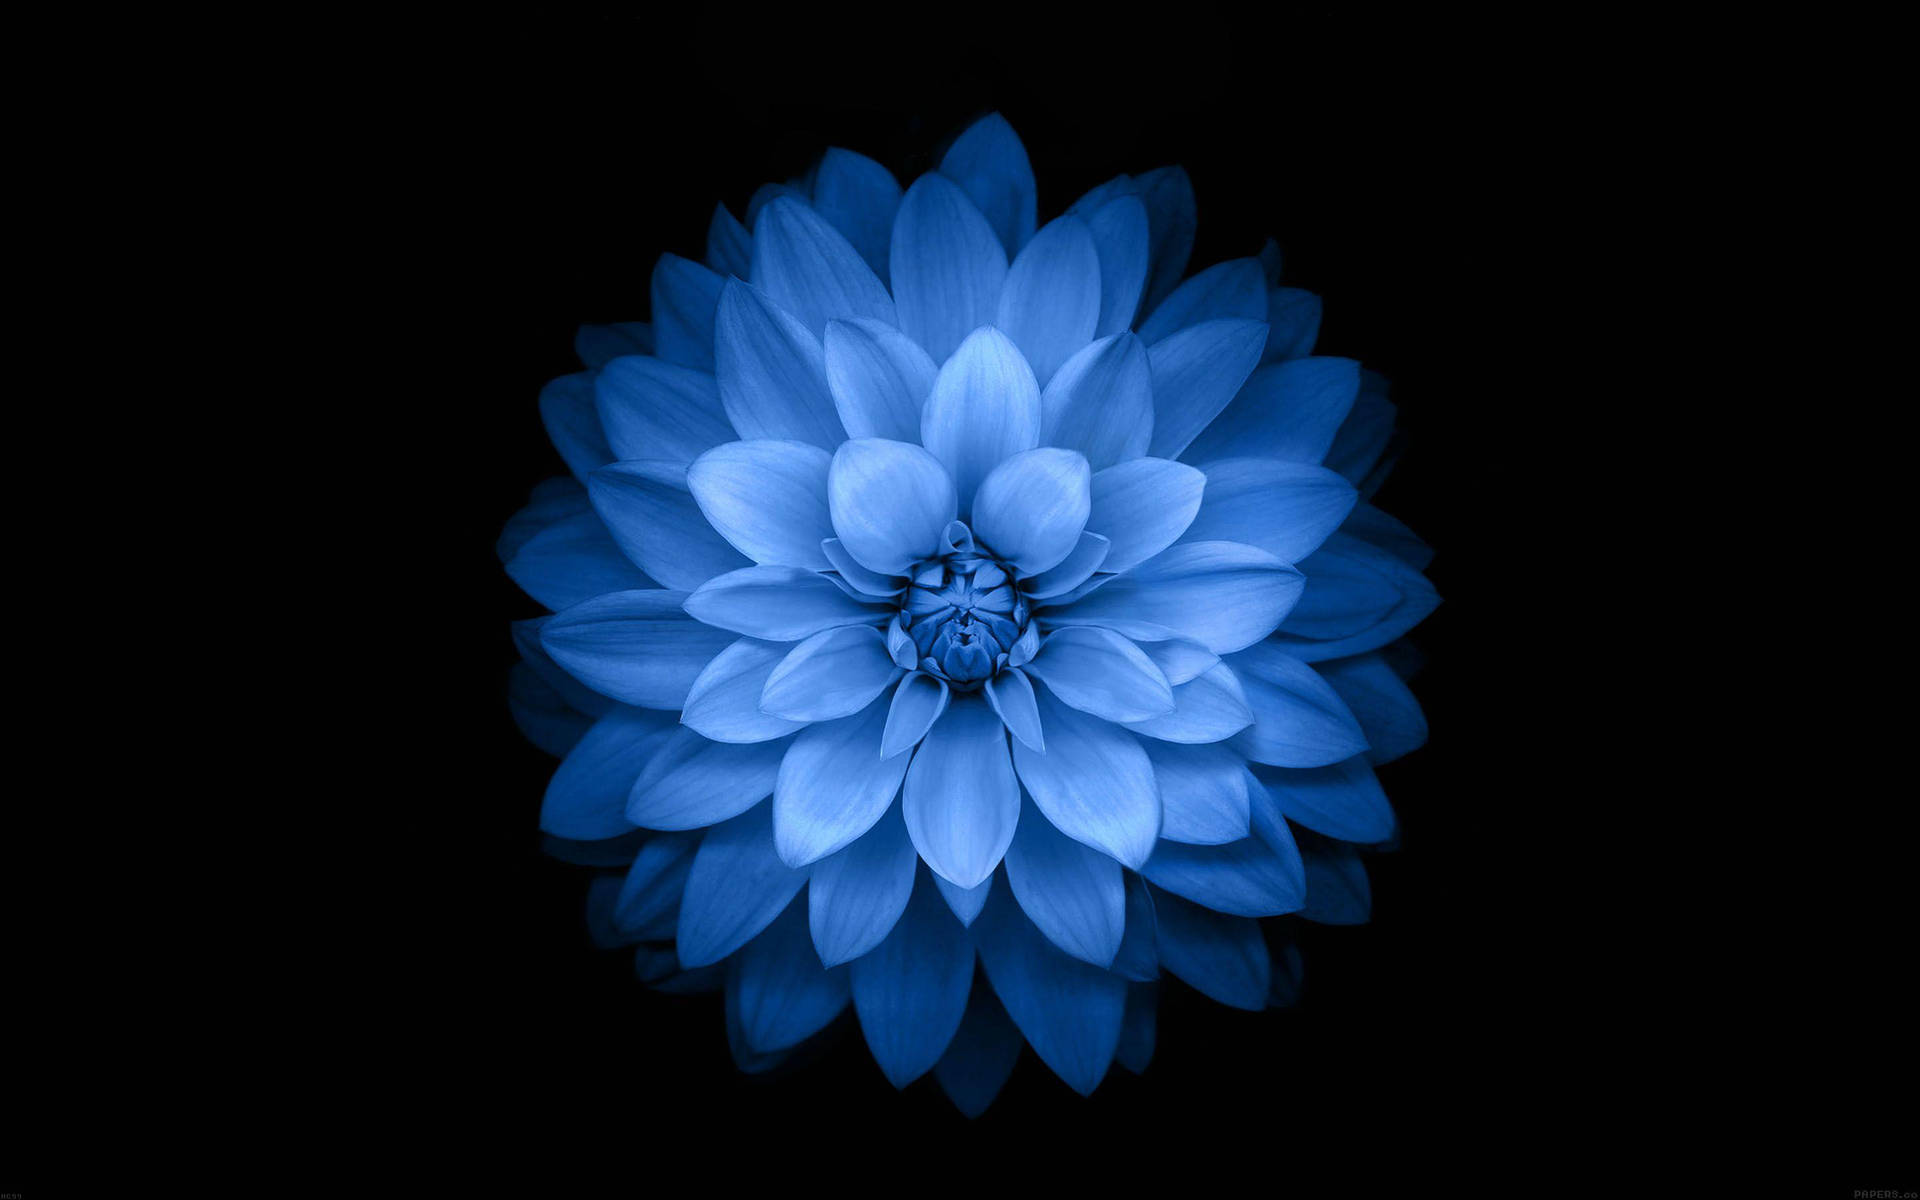 Dark Blue Aesthetic Giant Flower Picture